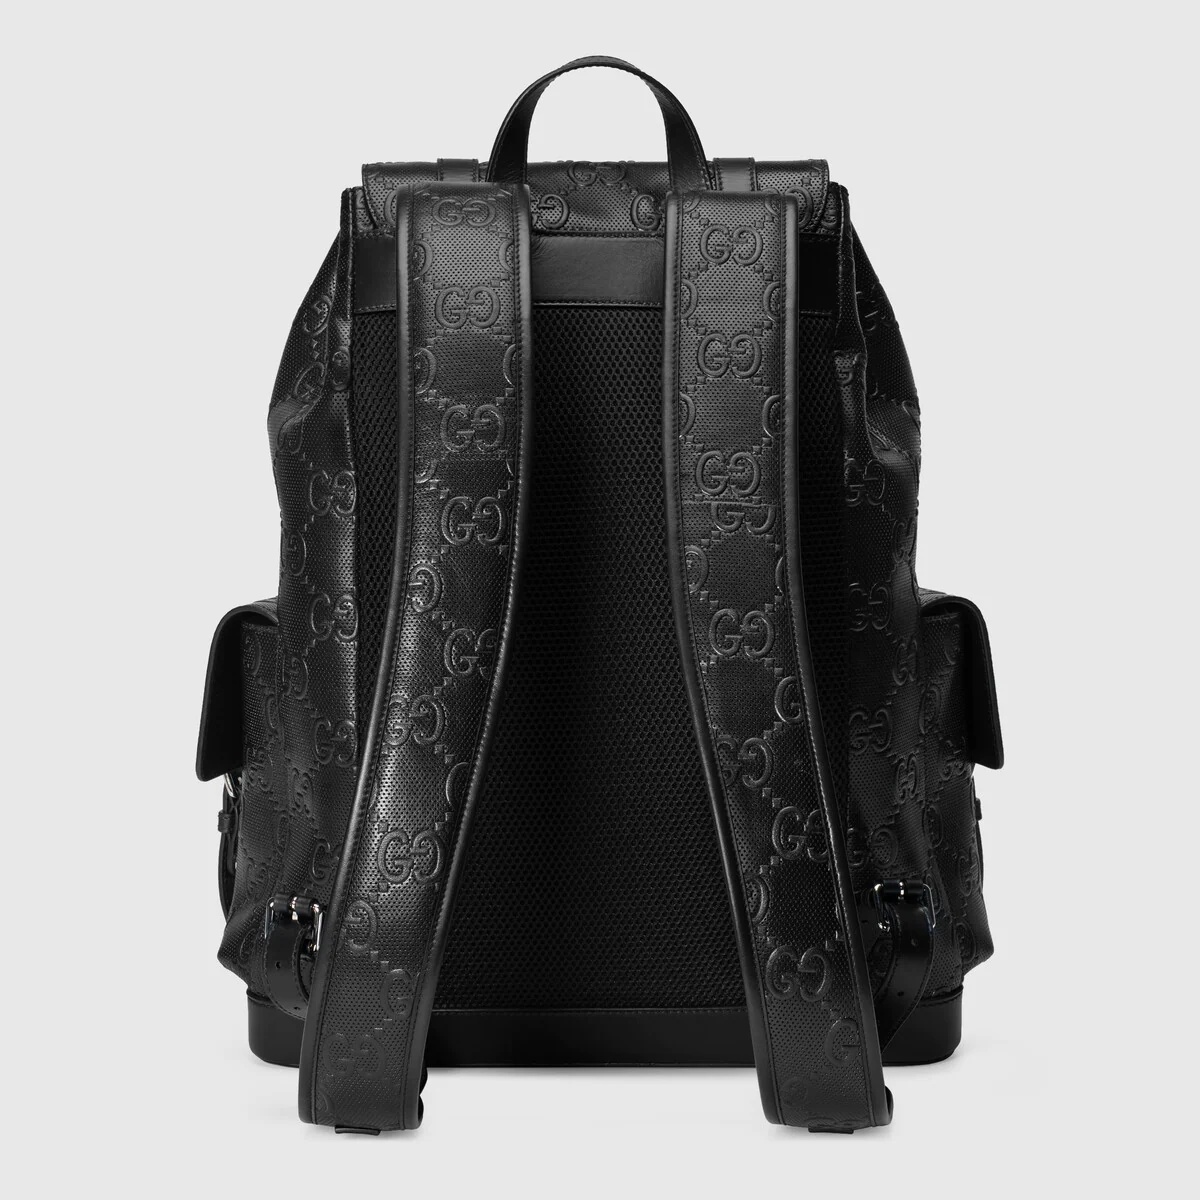 GG embossed backpack - 7